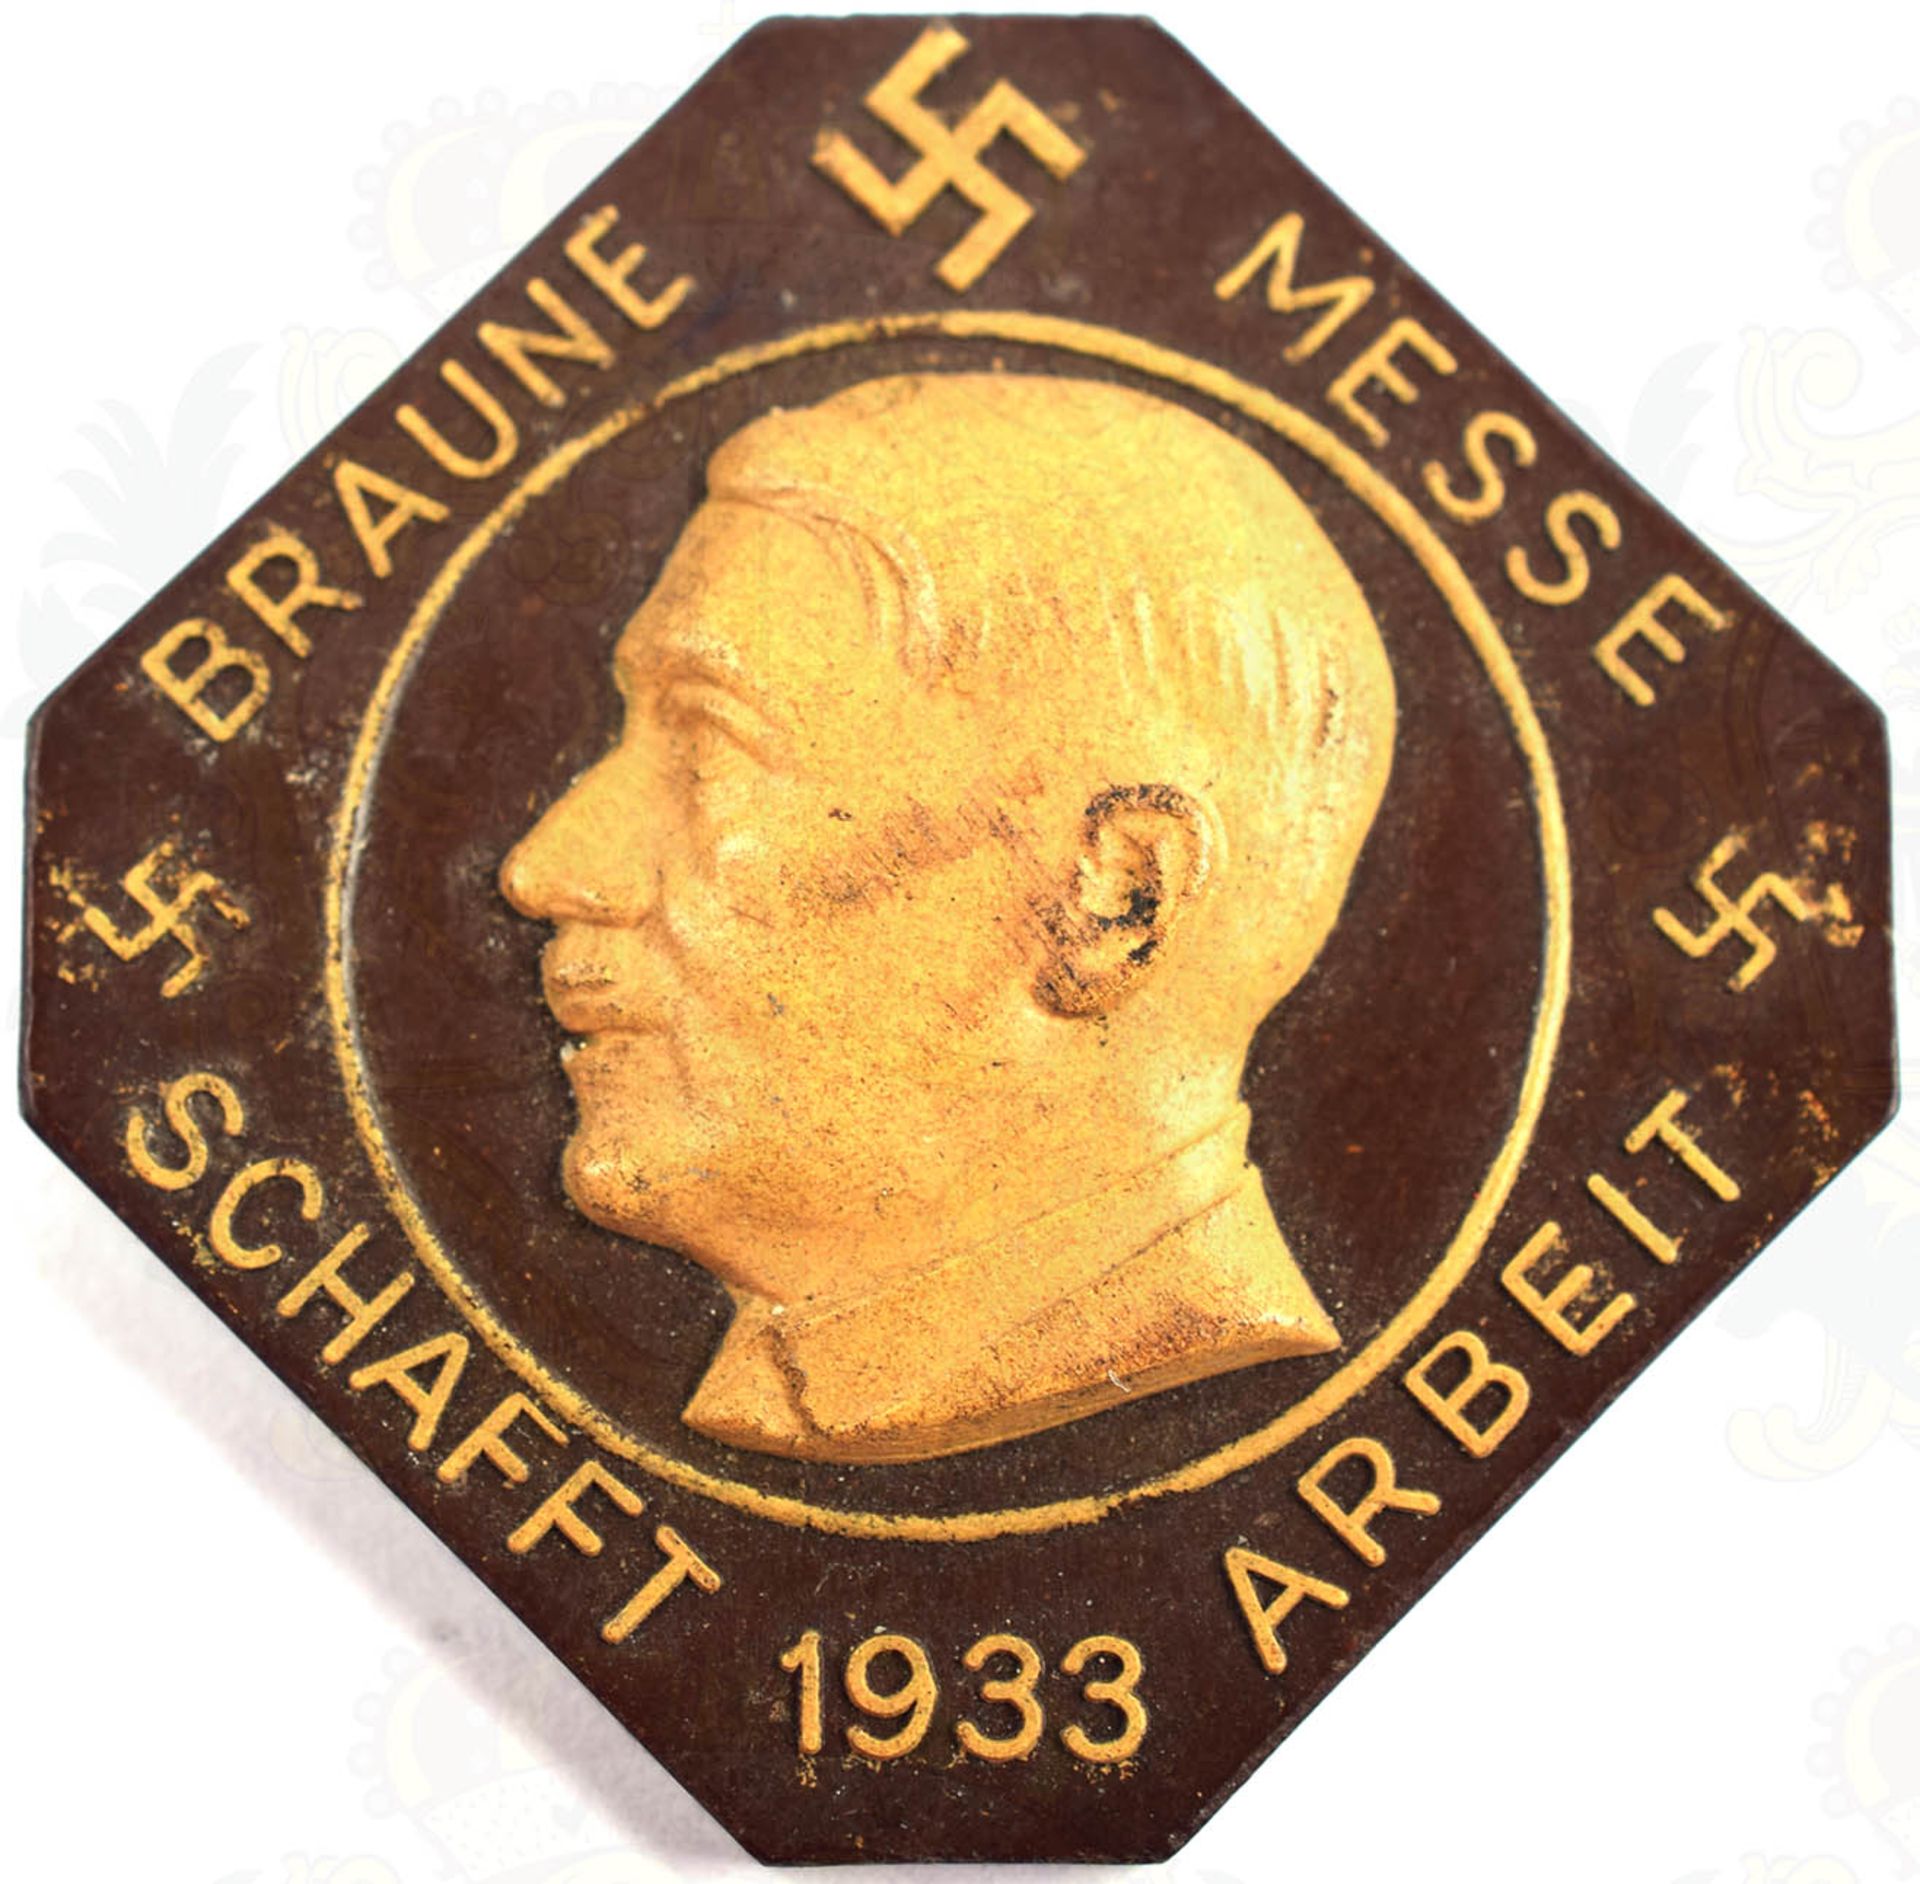 BRAUNE MESSE SCHAFFT ARBEIT 1933, Herst. „Bakelite Berlin“ u. Nr. „0299342, Bakelit, m. HK u.